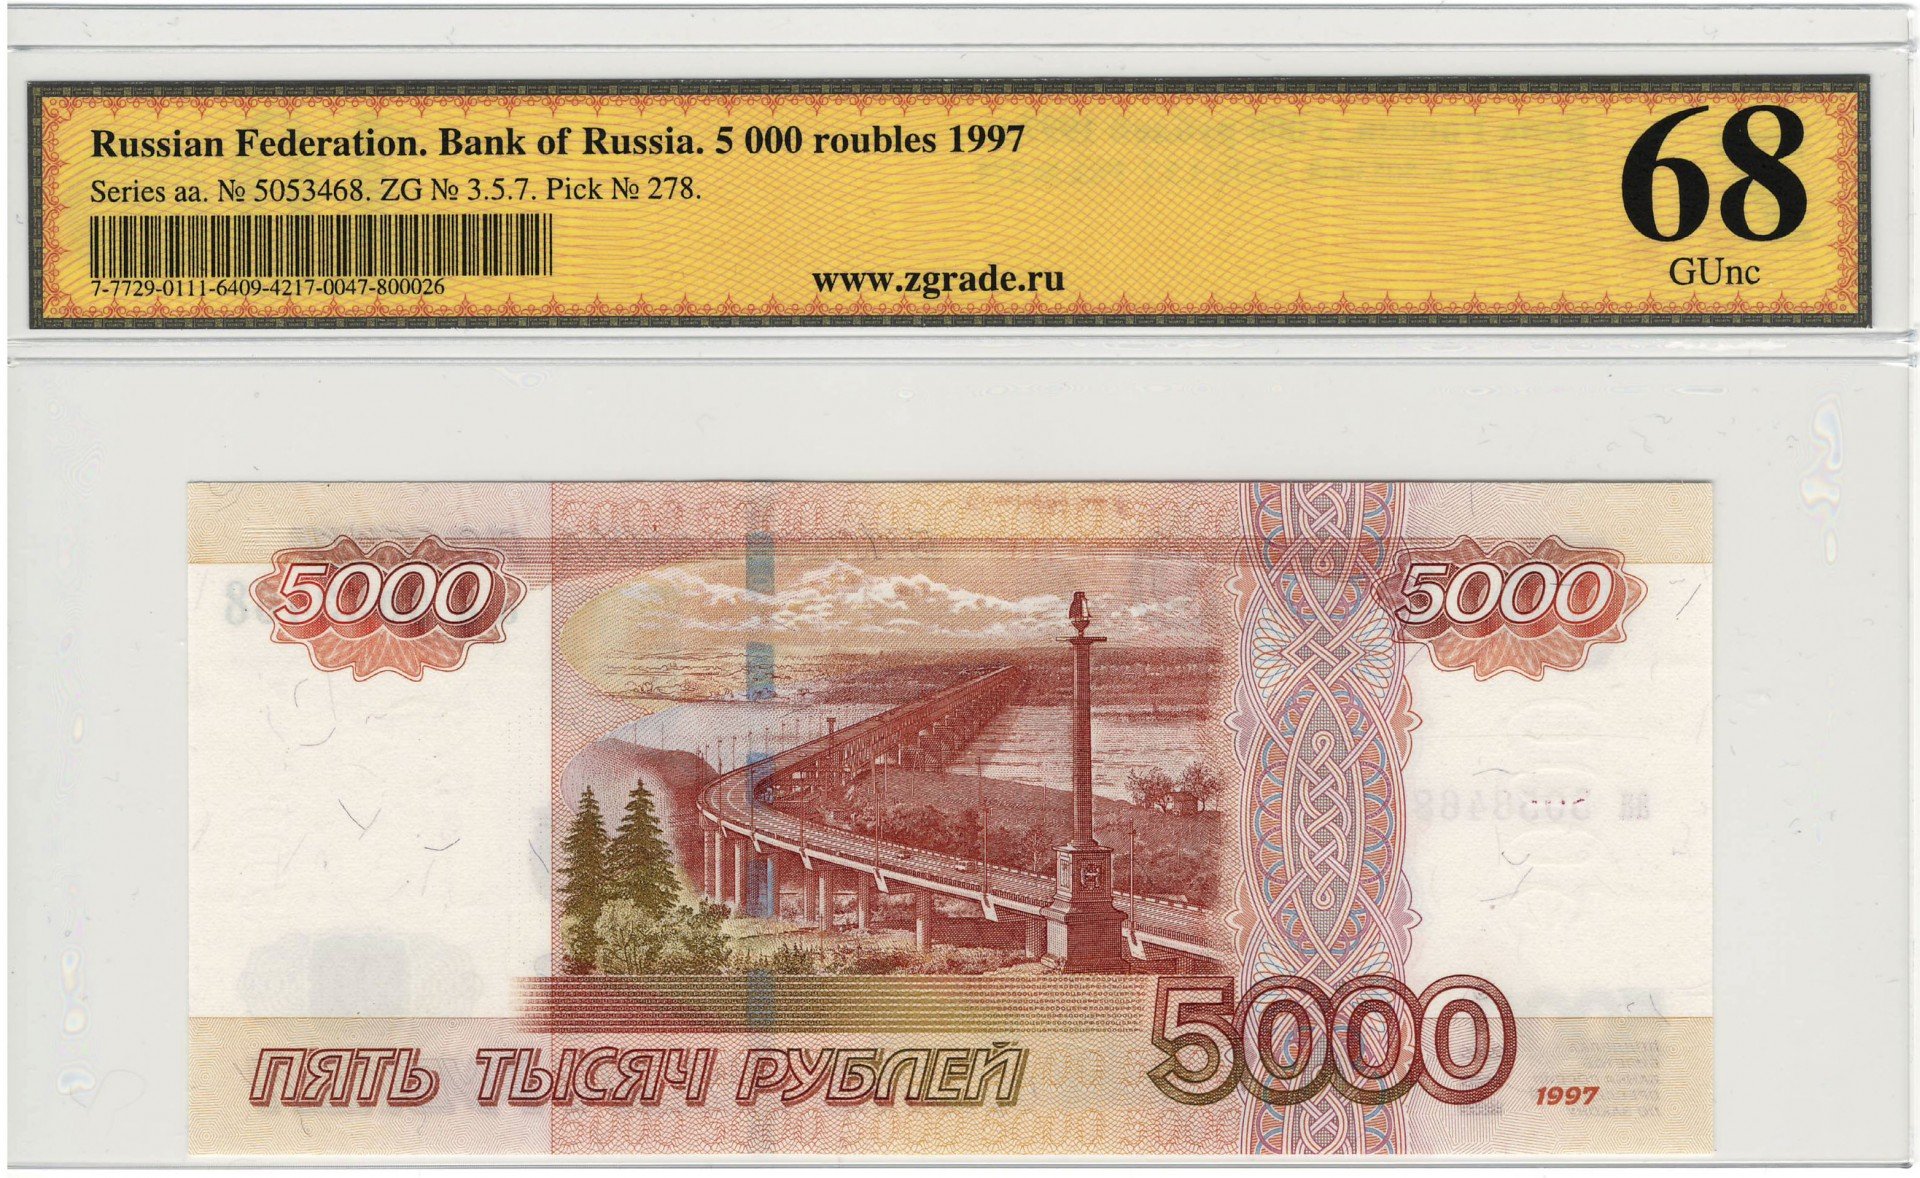 Рубль стоимостью 5000. Модификации 1997 5000. Банкнота 5000. Банкноты 5000 рублей. 5000 Рублей бумажные.